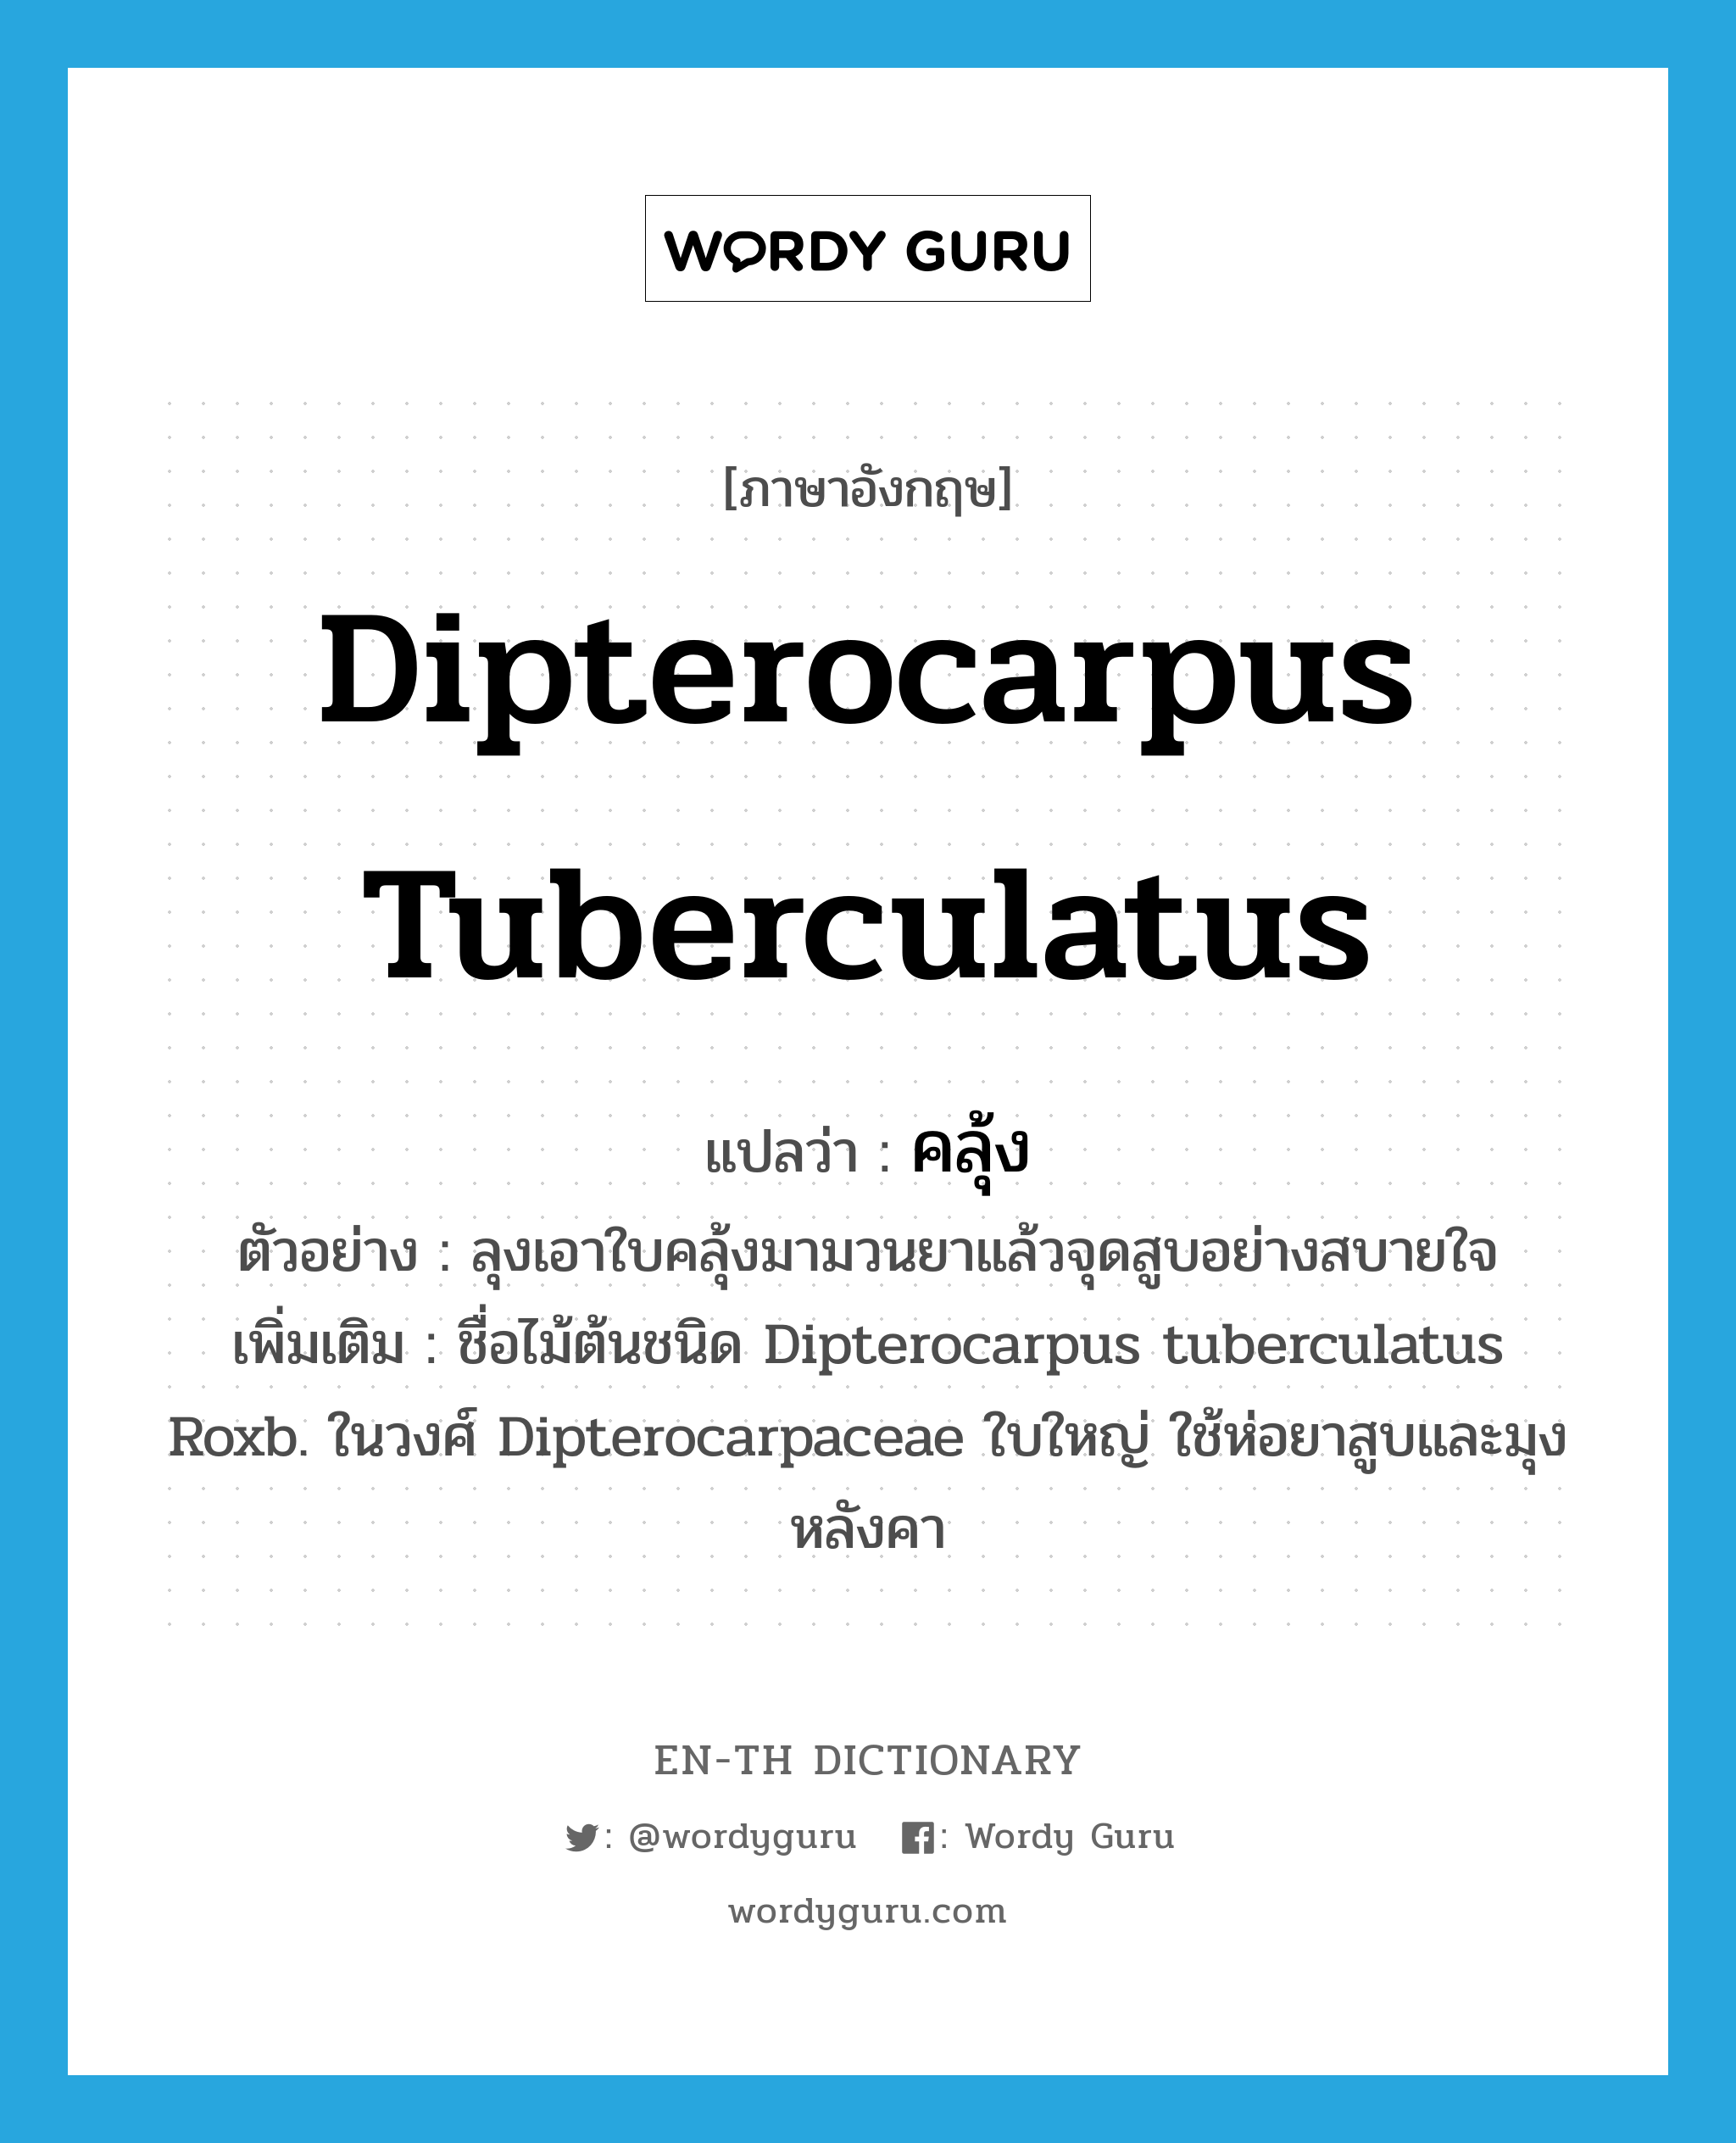 คลุ้ง ภาษาอังกฤษ?, คำศัพท์ภาษาอังกฤษ คลุ้ง แปลว่า Dipterocarpus tuberculatus ประเภท N ตัวอย่าง ลุงเอาใบคลุ้งมามวนยาแล้วจุดสูบอย่างสบายใจ เพิ่มเติม ชื่อไม้ต้นชนิด Dipterocarpus tuberculatus Roxb. ในวงศ์ Dipterocarpaceae ใบใหญ่ ใช้ห่อยาสูบและมุงหลังคา หมวด N